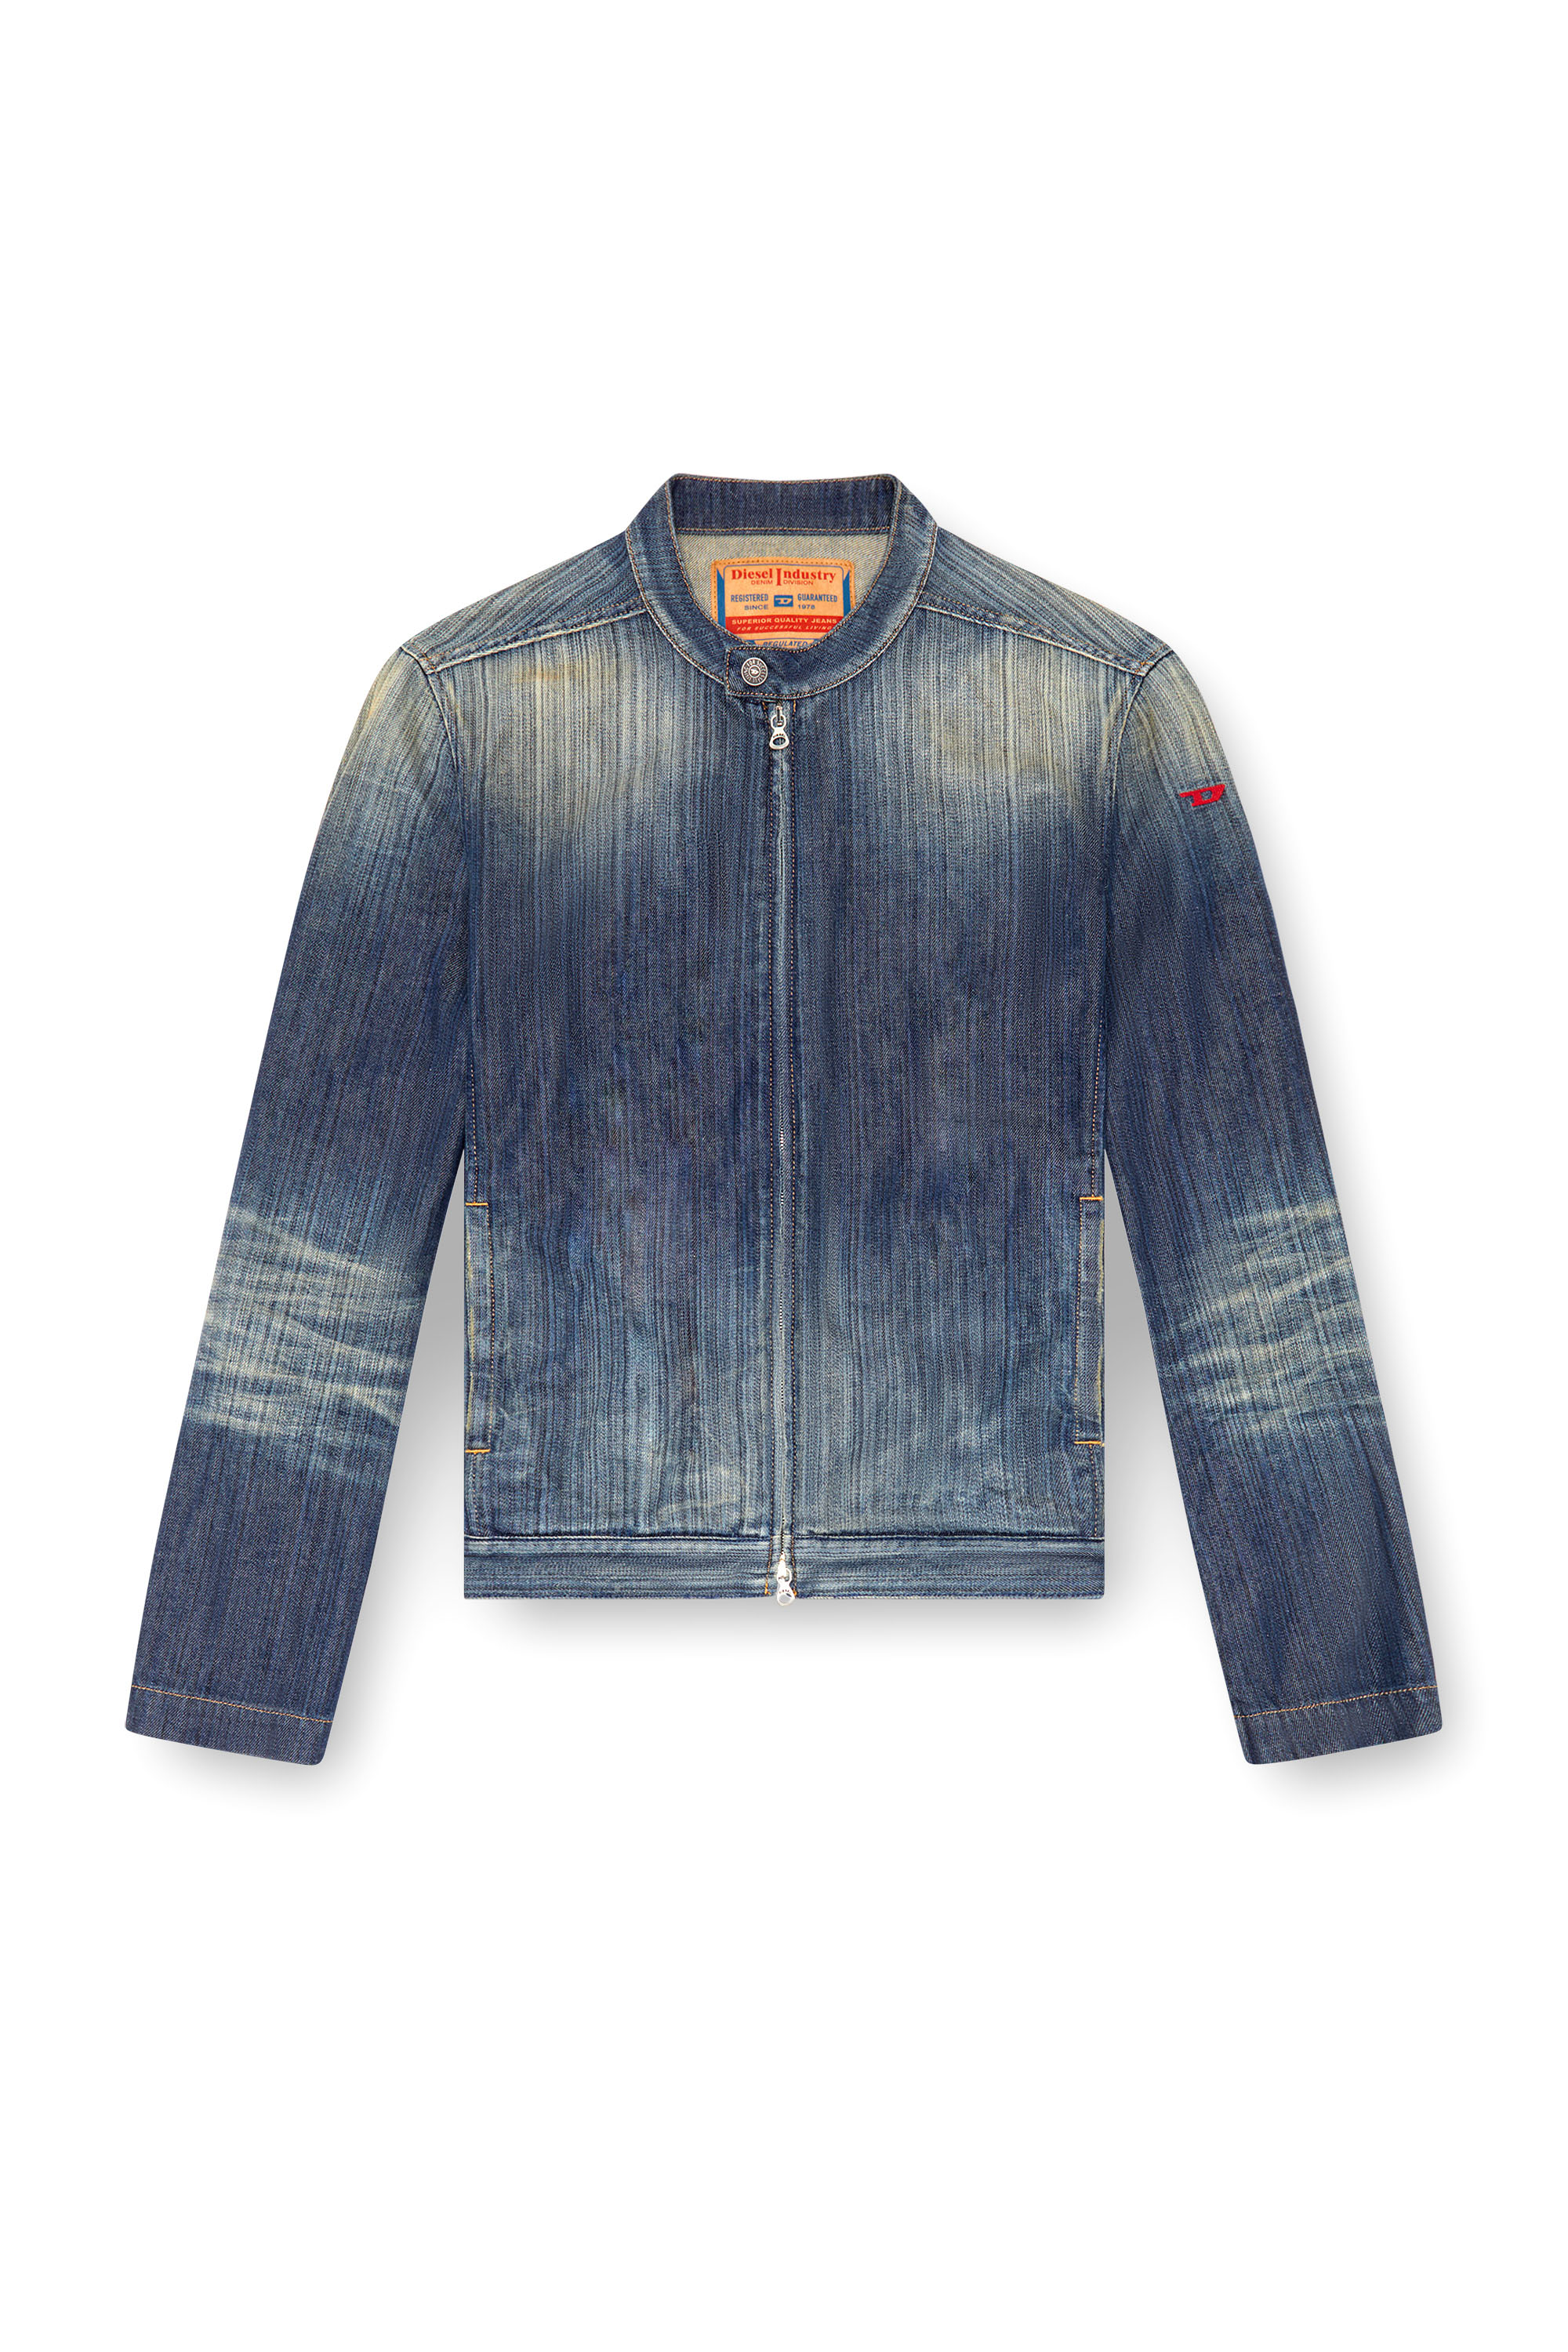 Diesel - D-GLORY, Man Moto jacket in streaky denim in Blue - Image 3